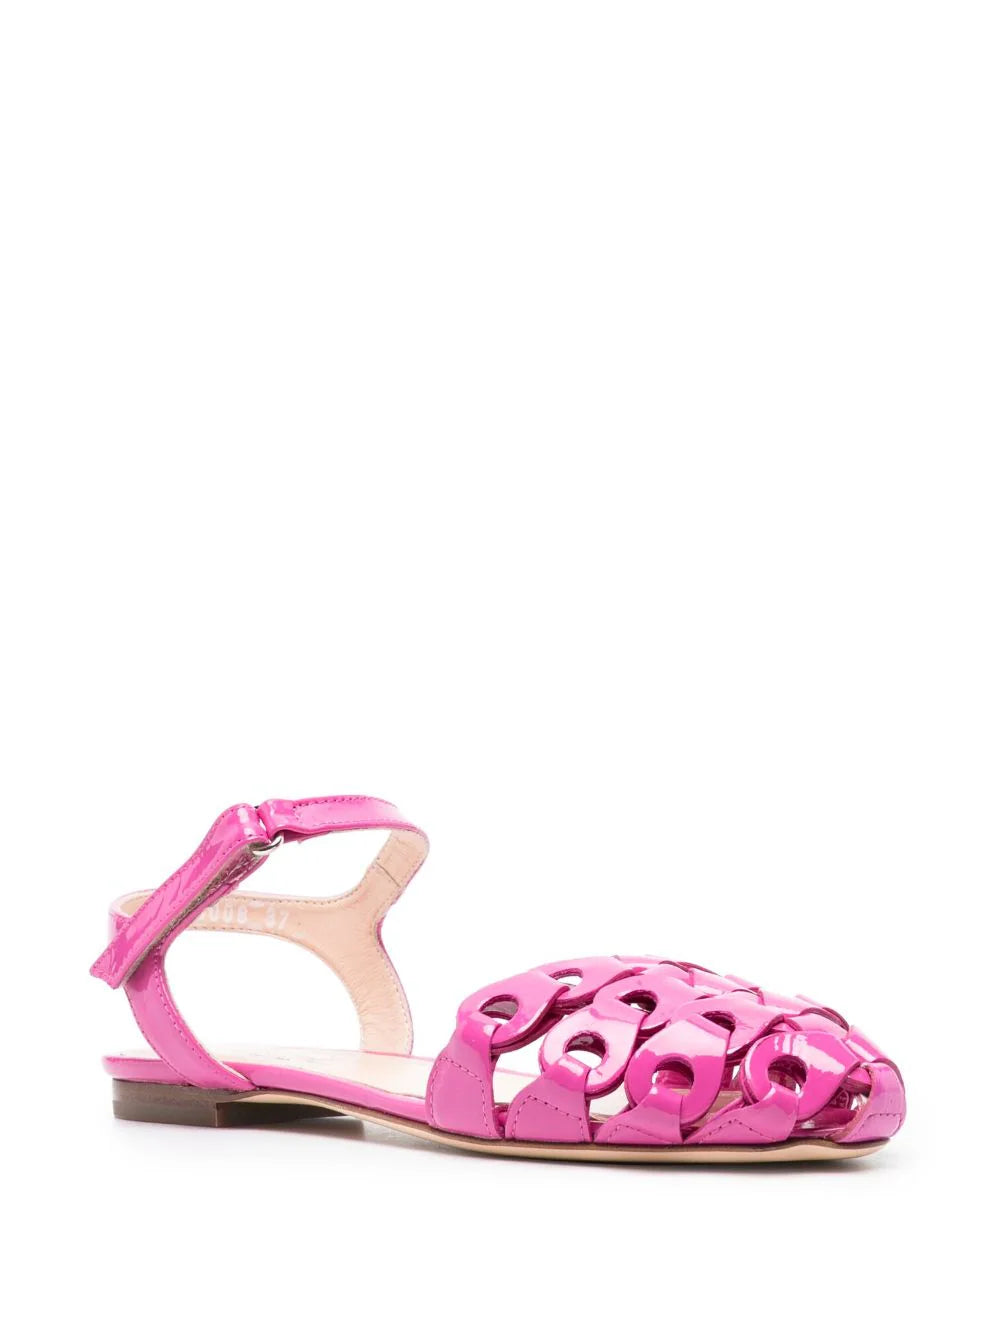 Petal straps sandal, flamingo